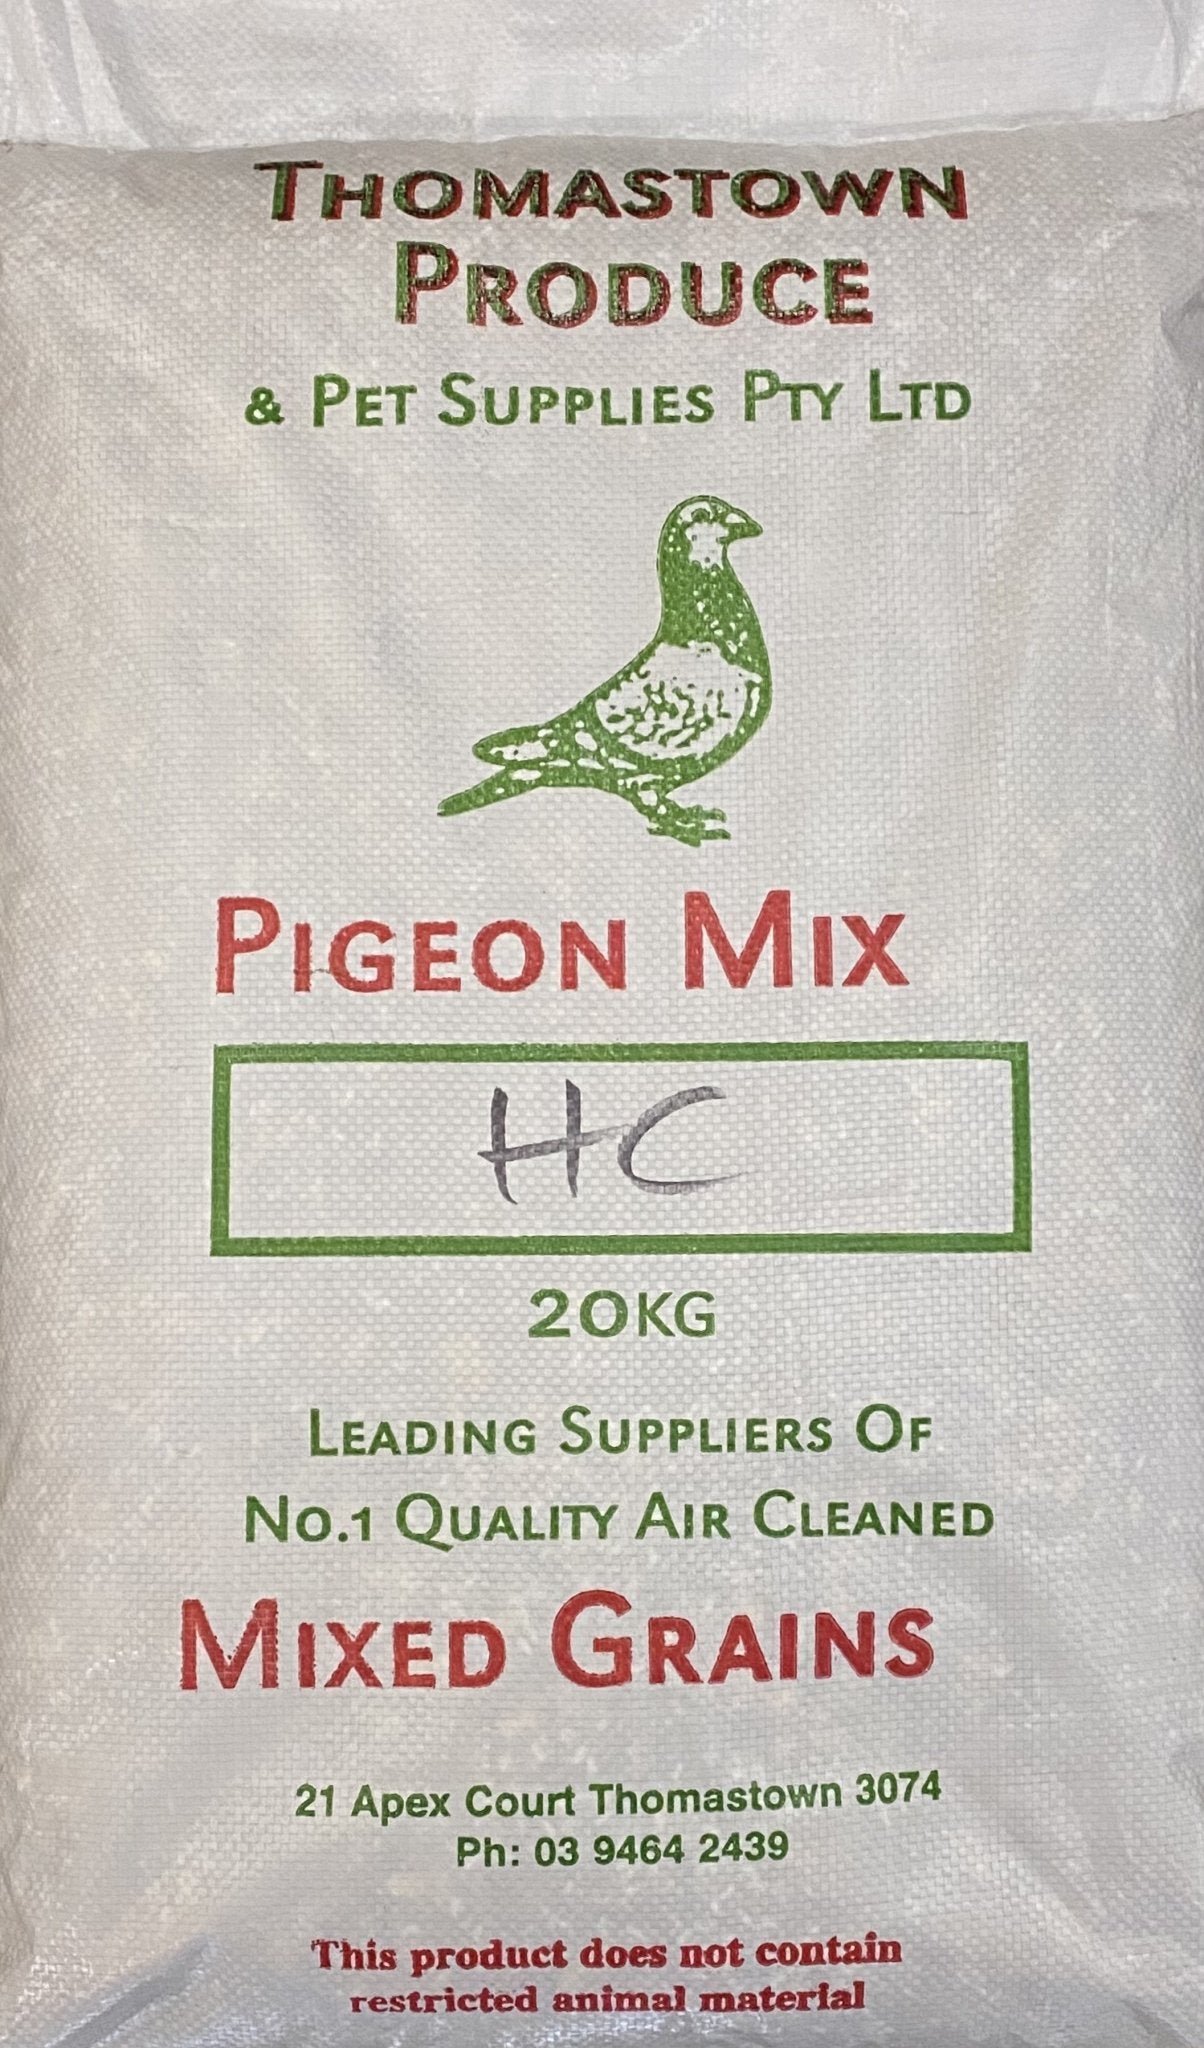 Pigeon Mix 20kg High Carb Thomastown - Woonona Petfood & Produce